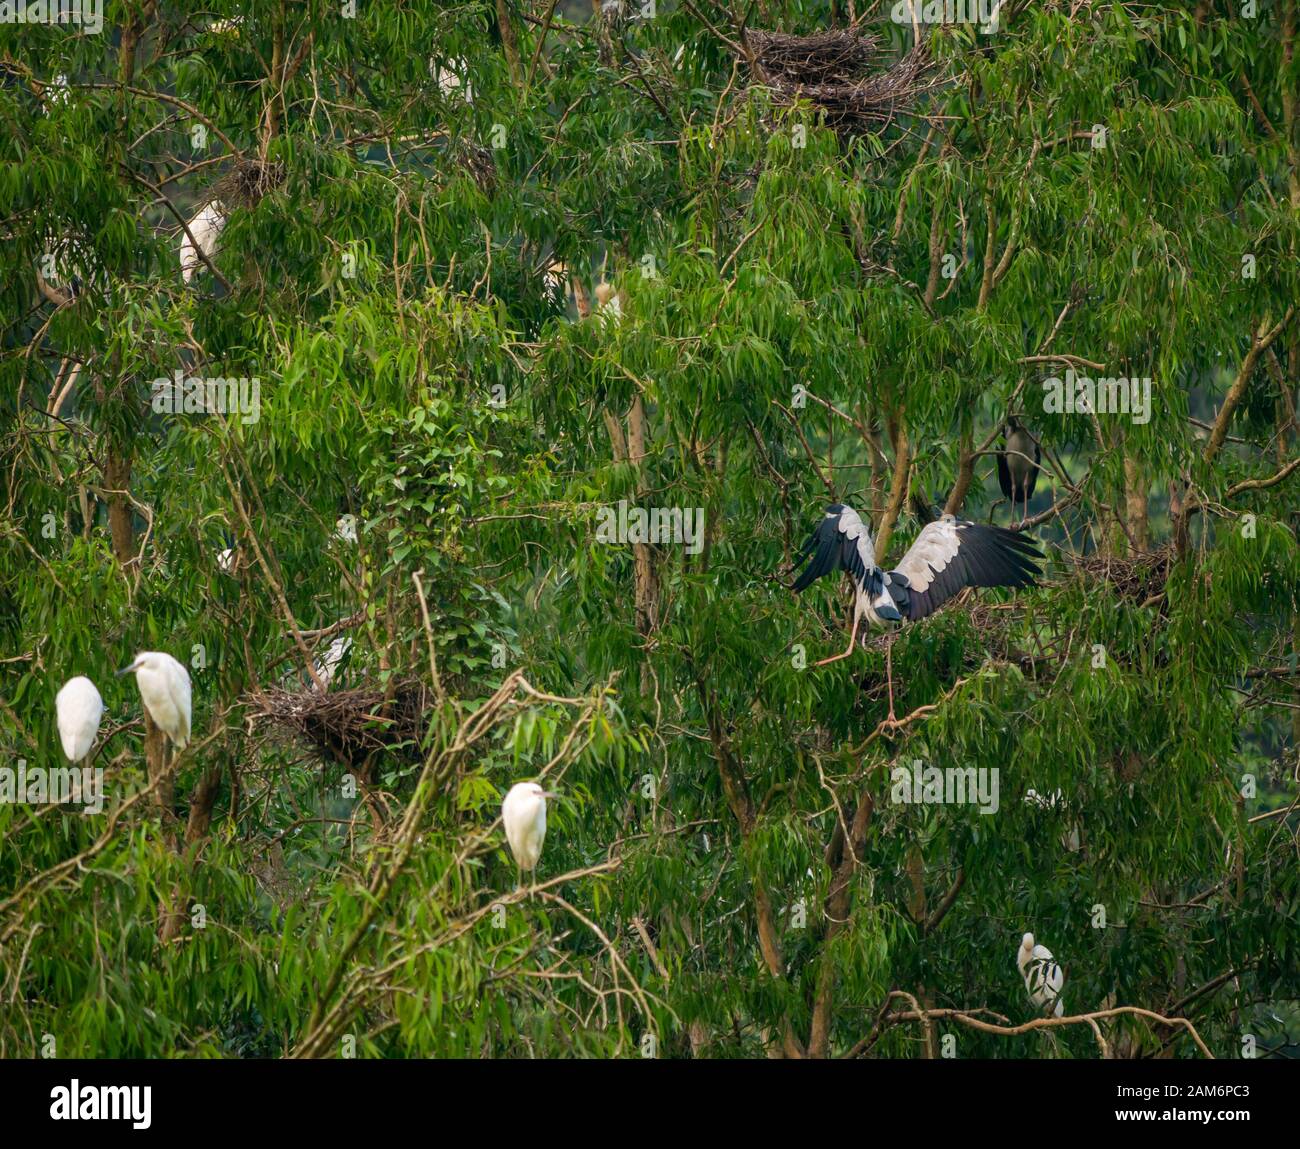 Des cigognes et des aigrettes asiatiques en plein air dans les arbres, Thung Nham Bird Park, Tam Coc, Ninh Binh, Vietnam Banque D'Images